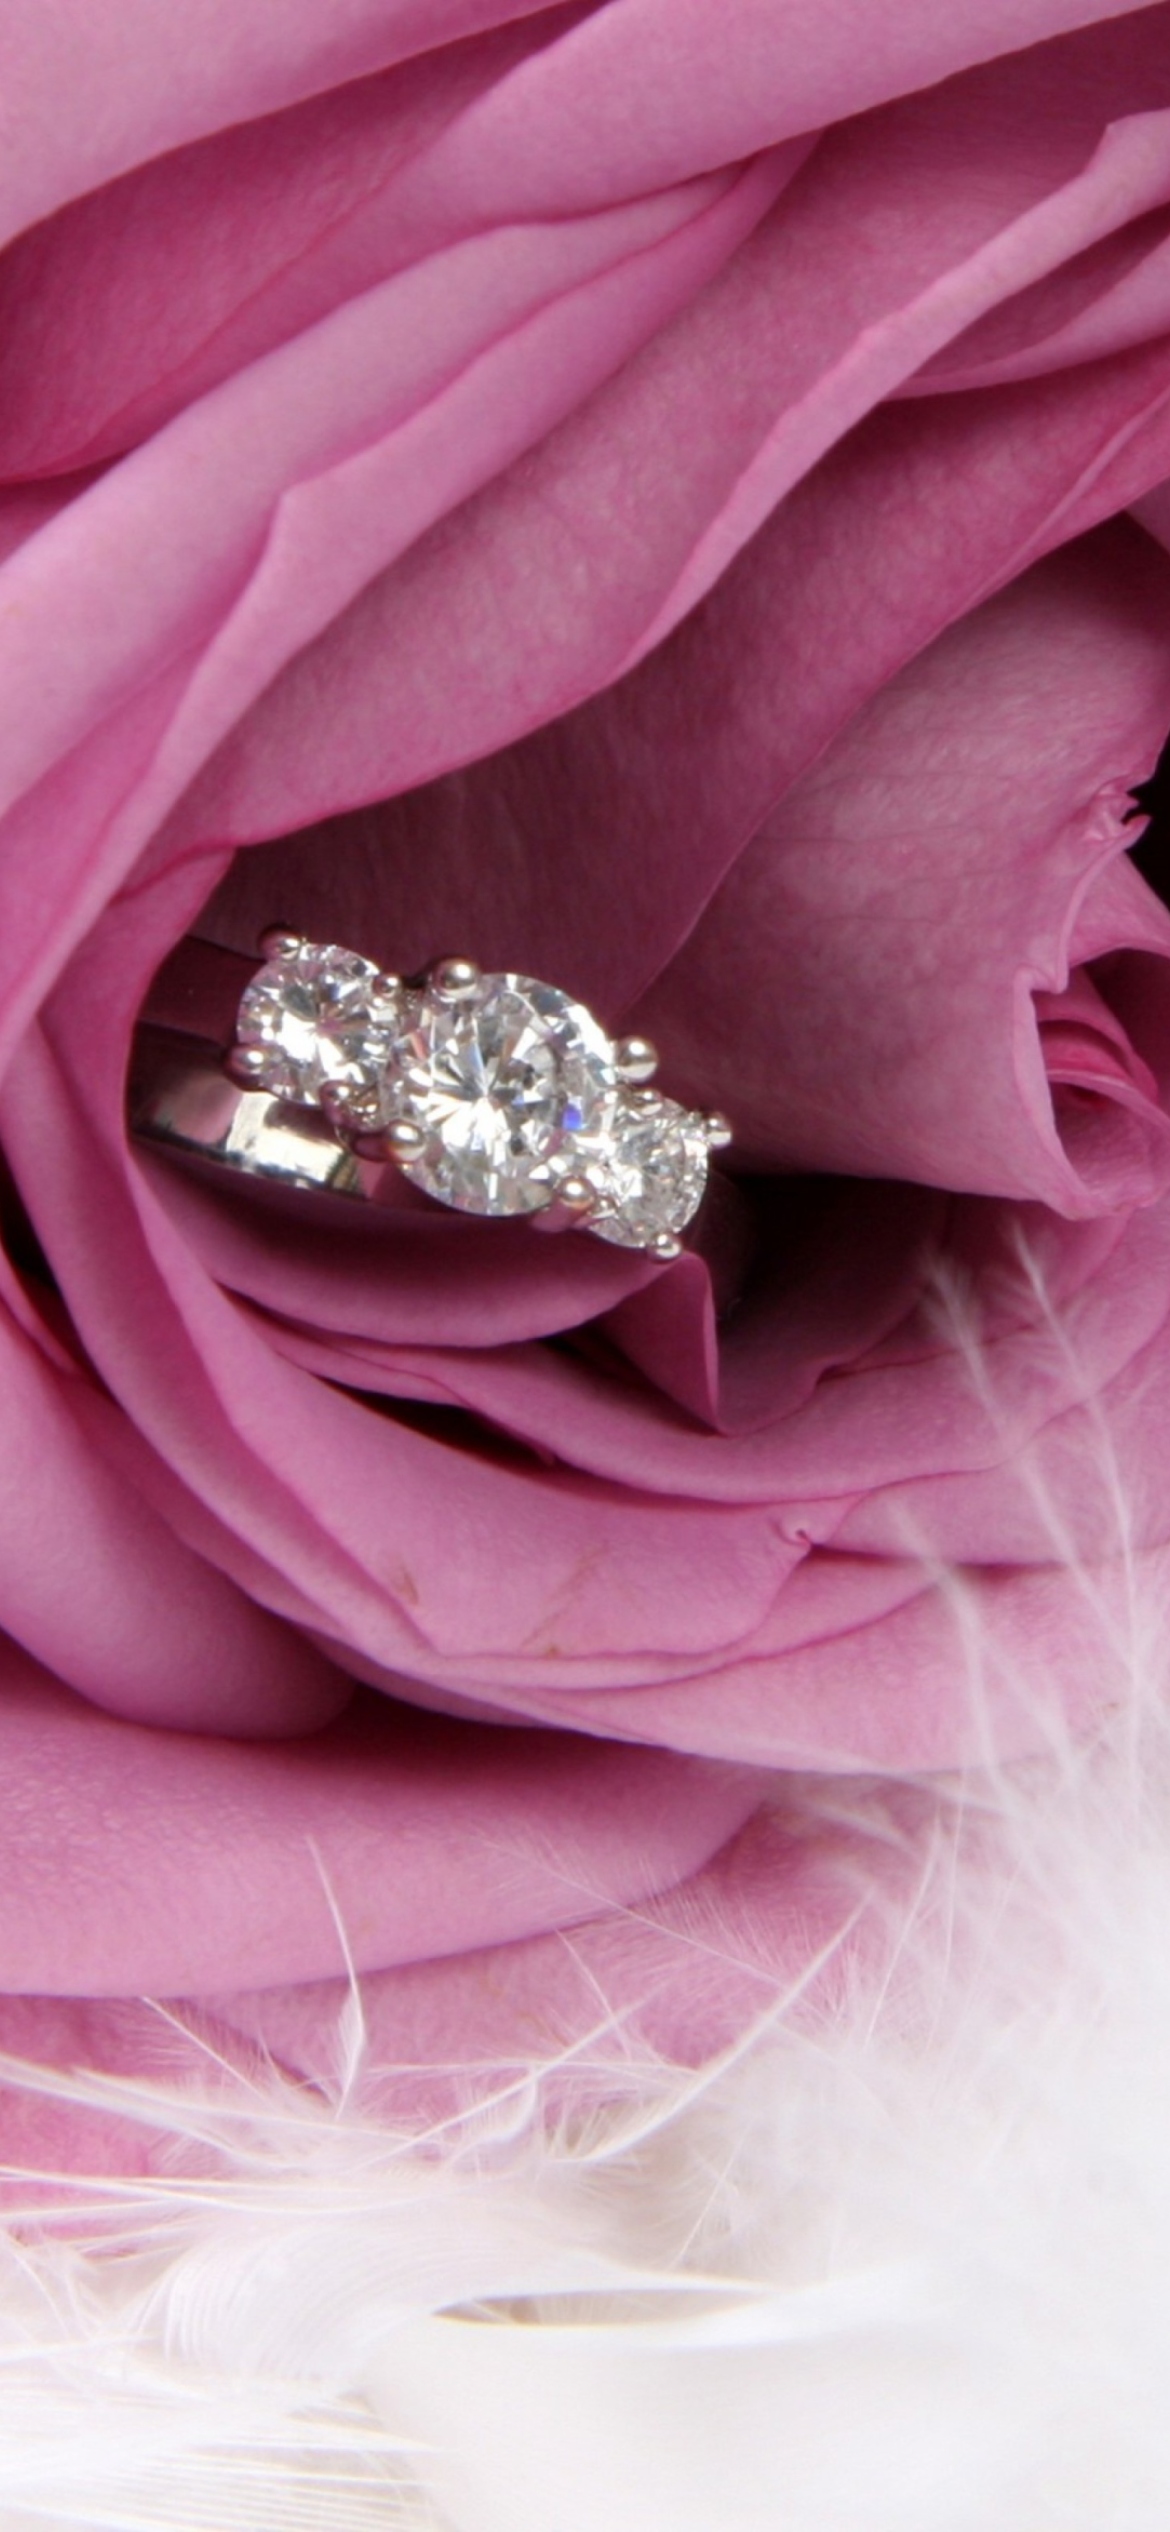 Engagement Ring In Pink Rose screenshot #1 1170x2532